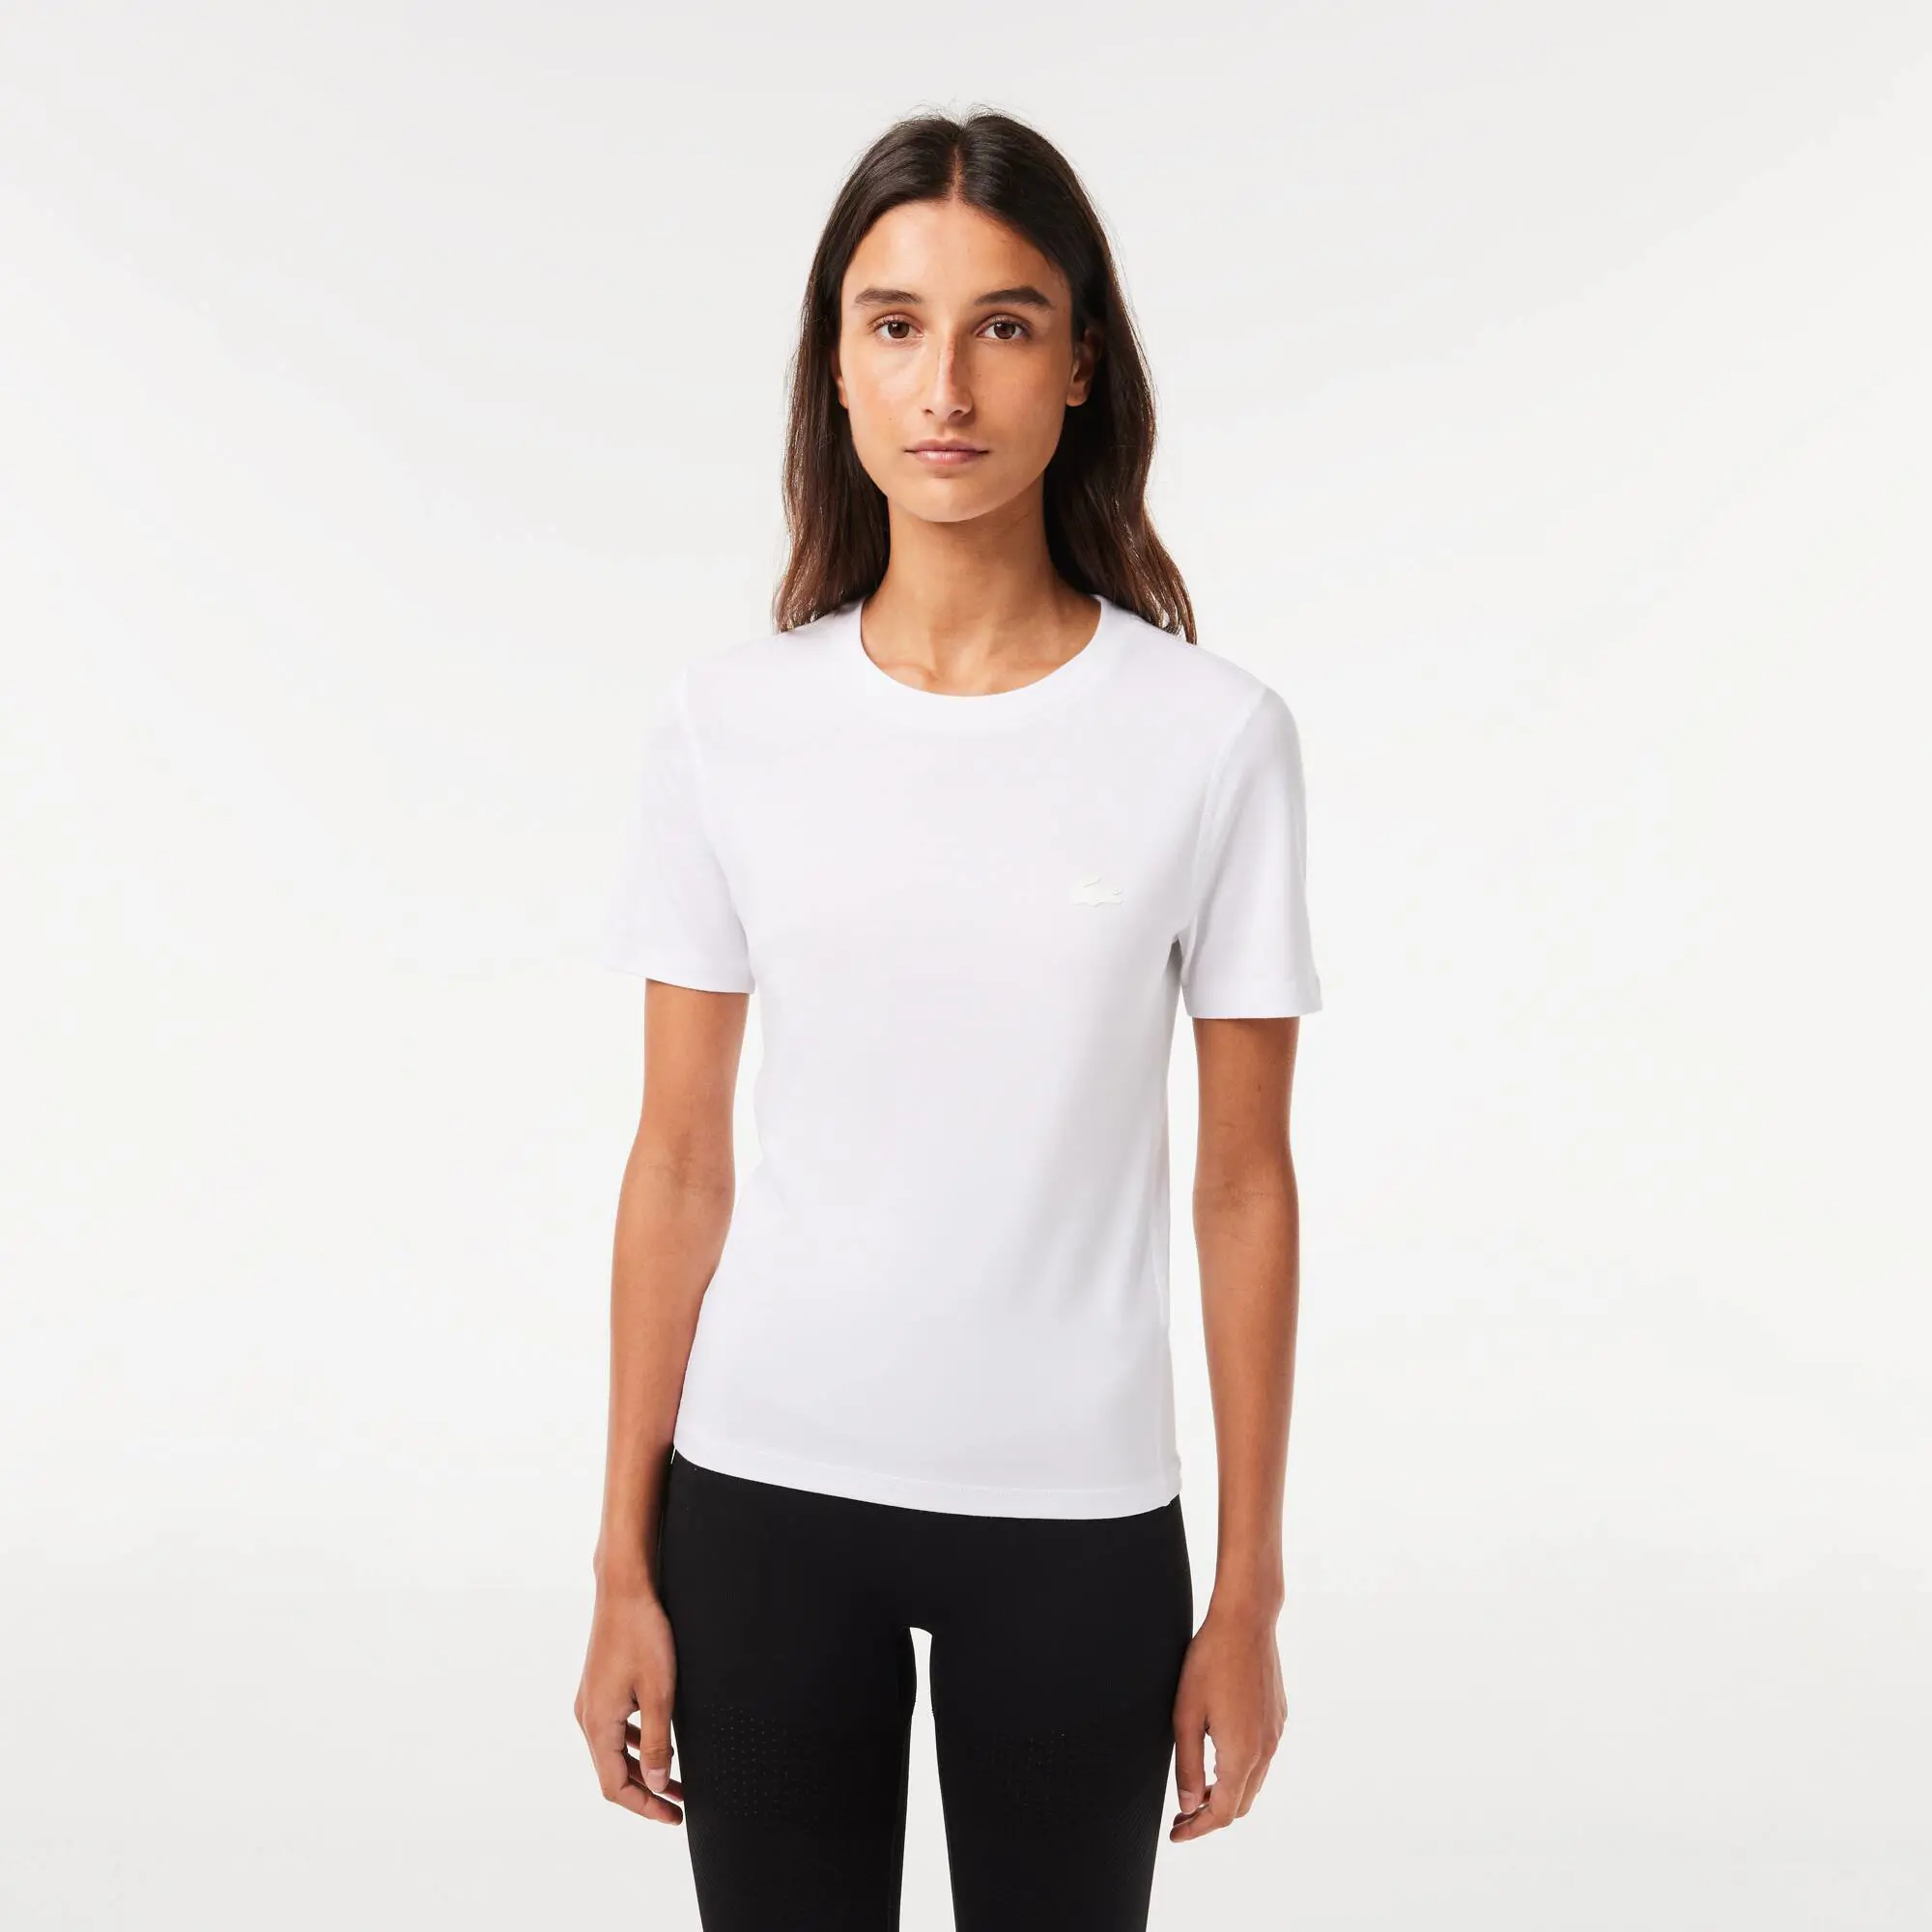 Lacoste Women’s Slim Fit Crew Neck Cotton Blend T-shirt. 1